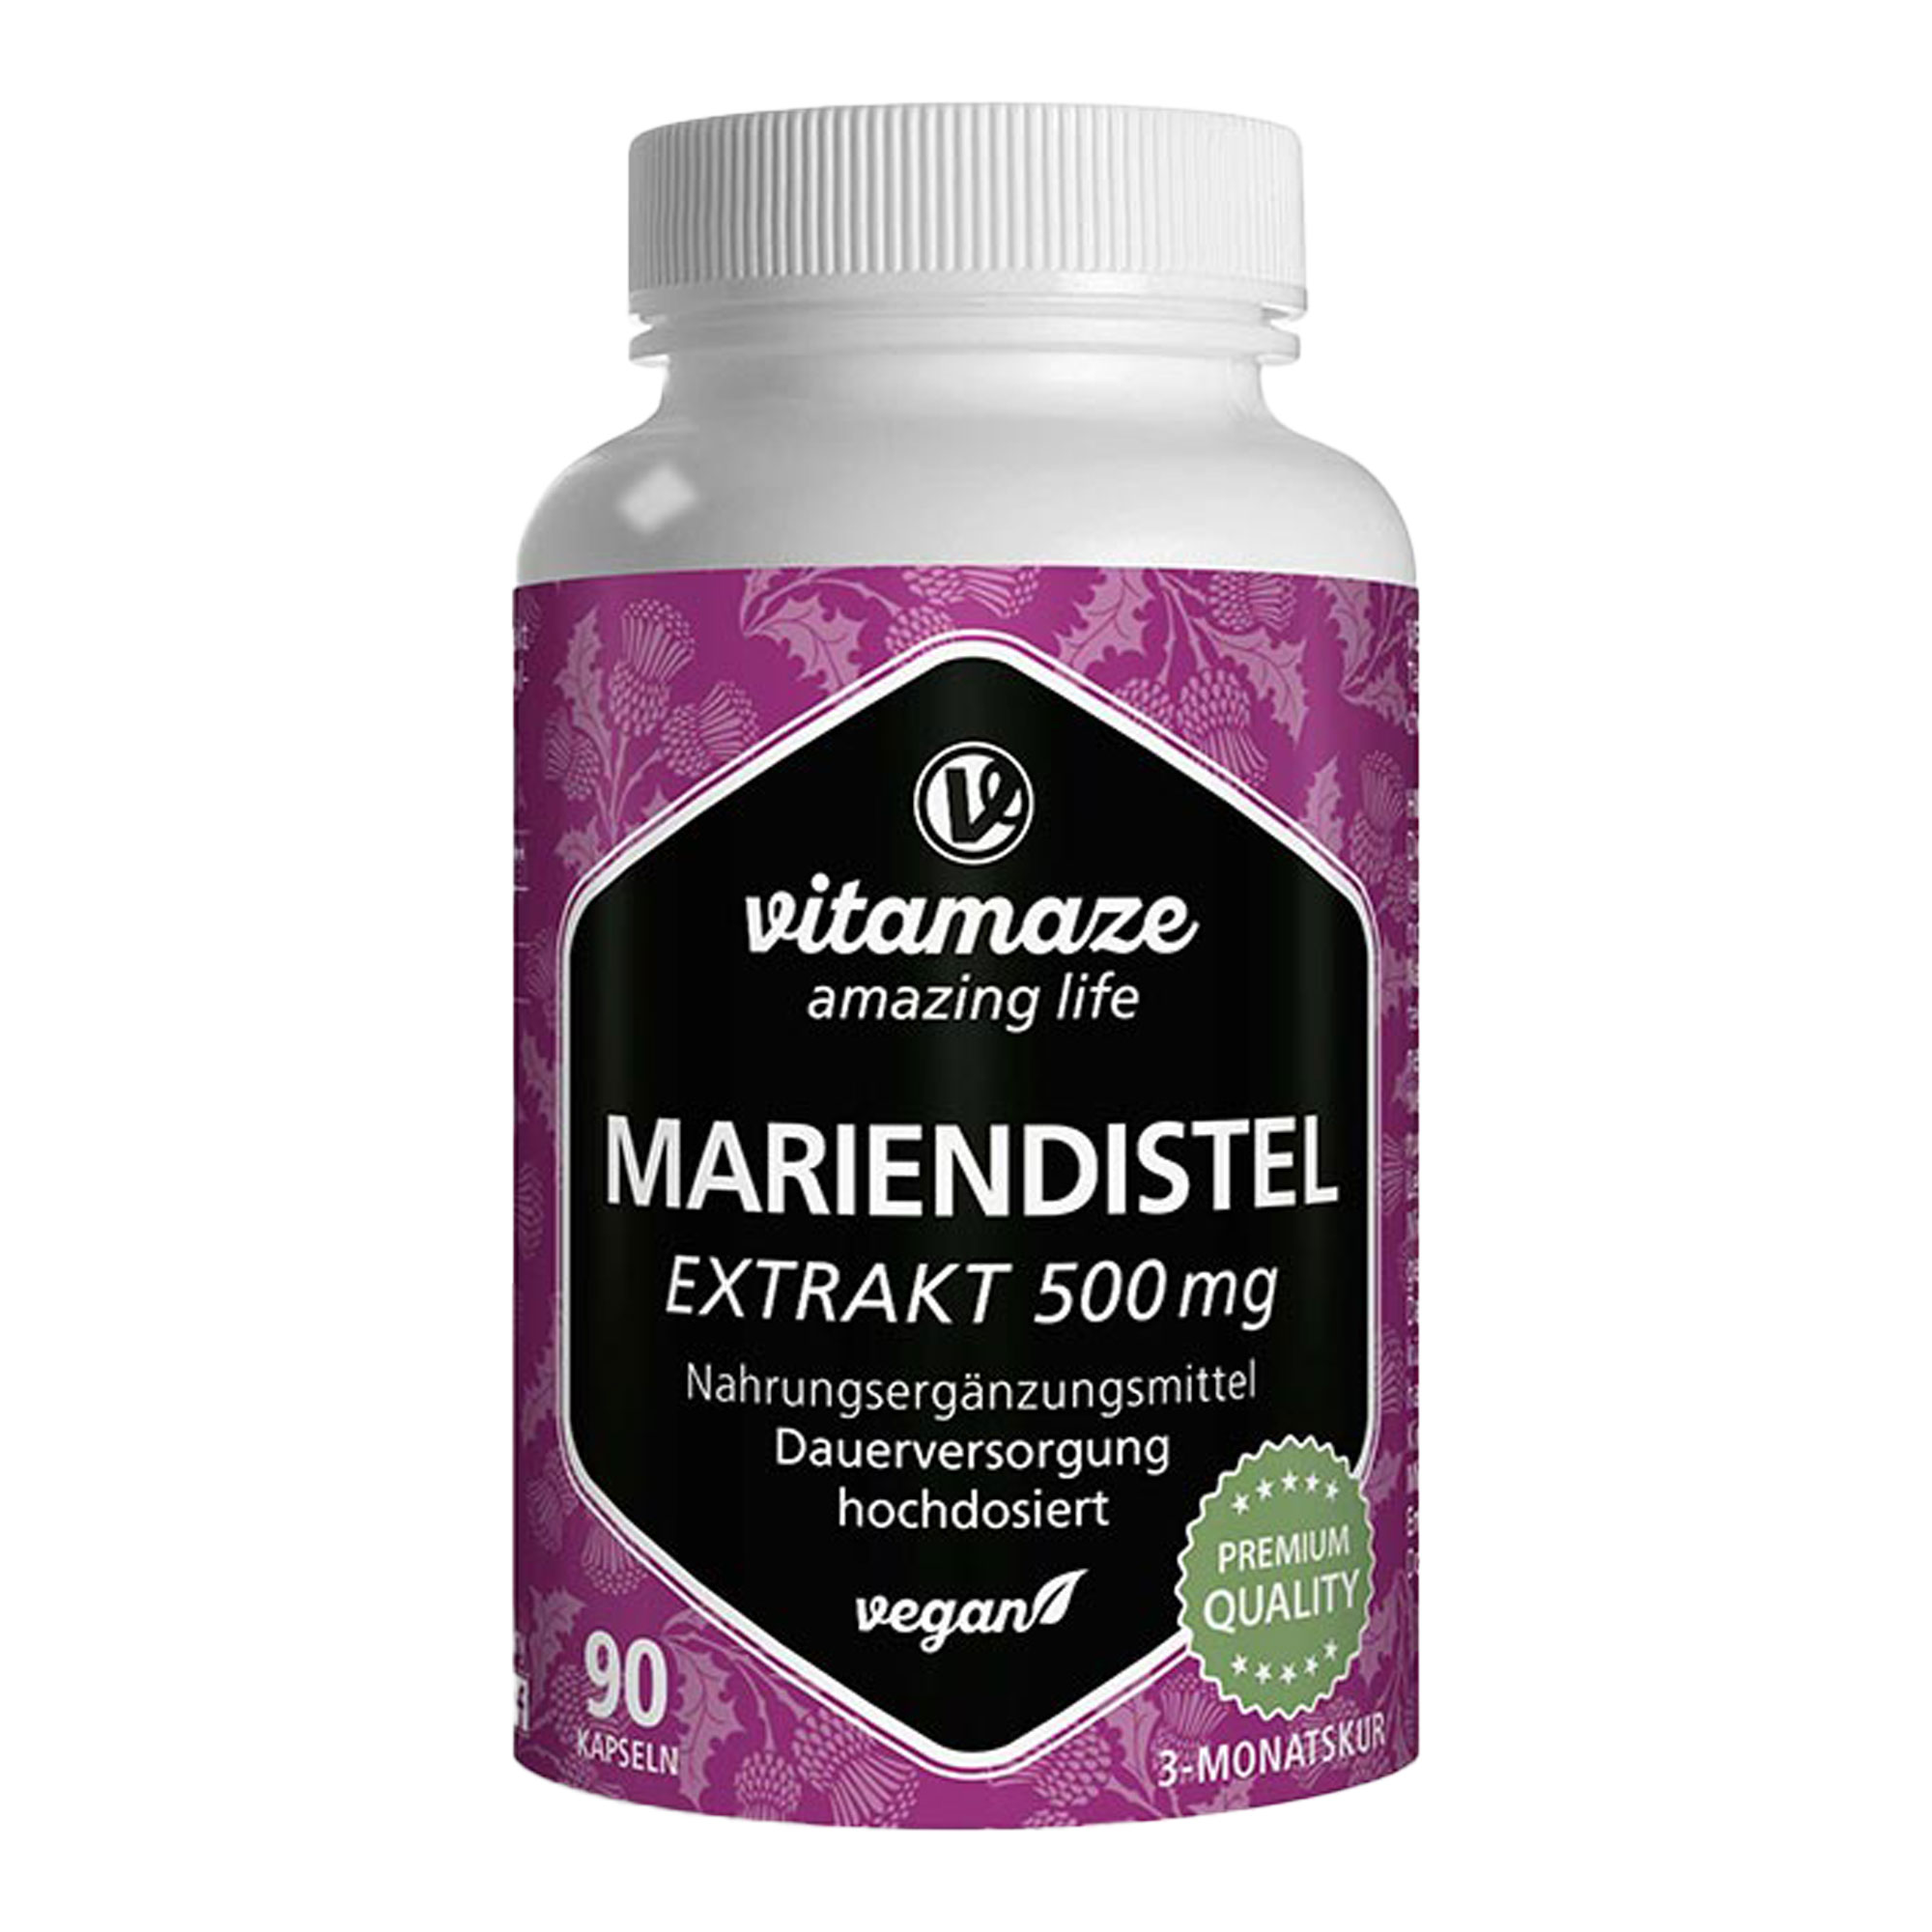 Nahrungsergänzungsmittel aus 500 mg Mariendistel Extrakt mit 80 % Silymarin.